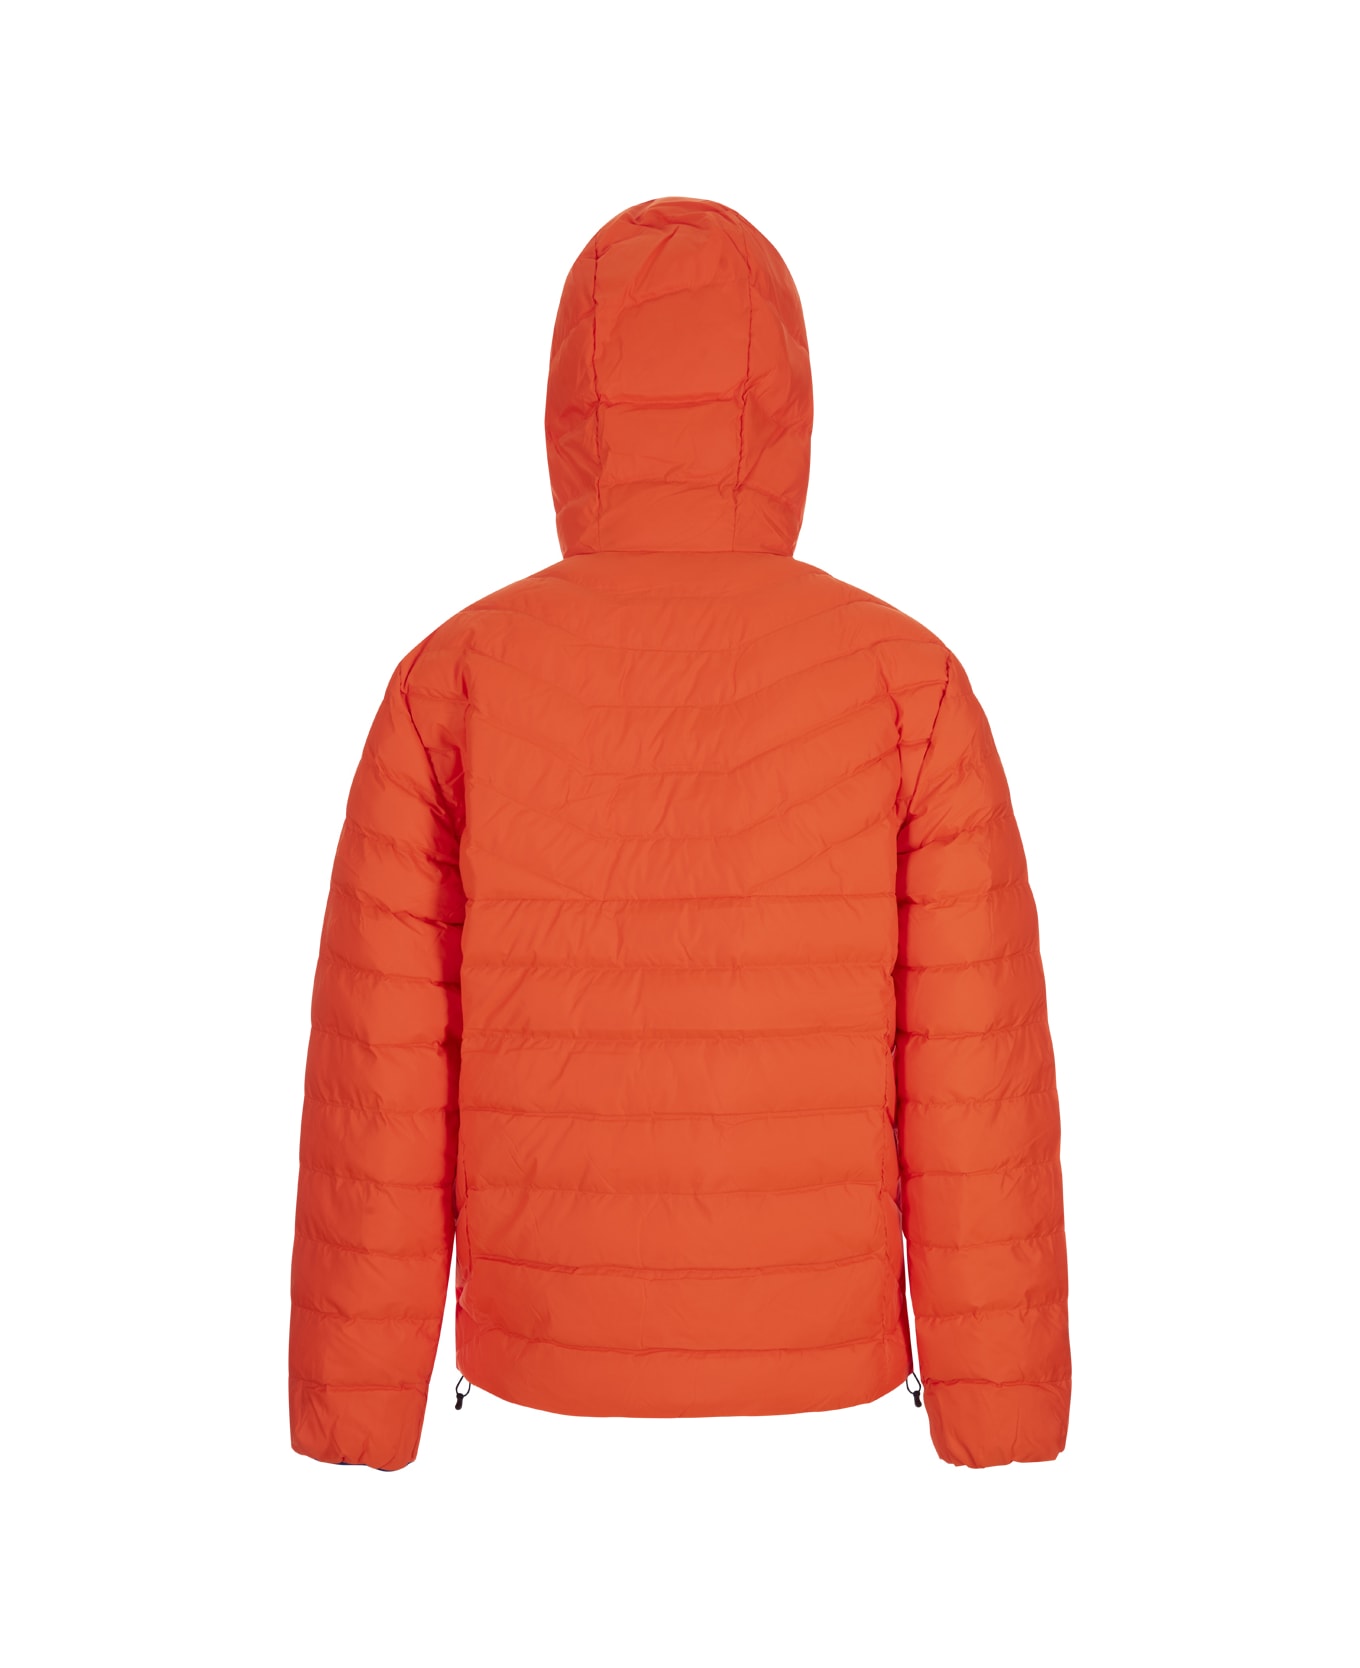 Polo Ralph Lauren Orange Foldable Water Repellent Jacket Down Jacket - ORANGE ダウンジャケット